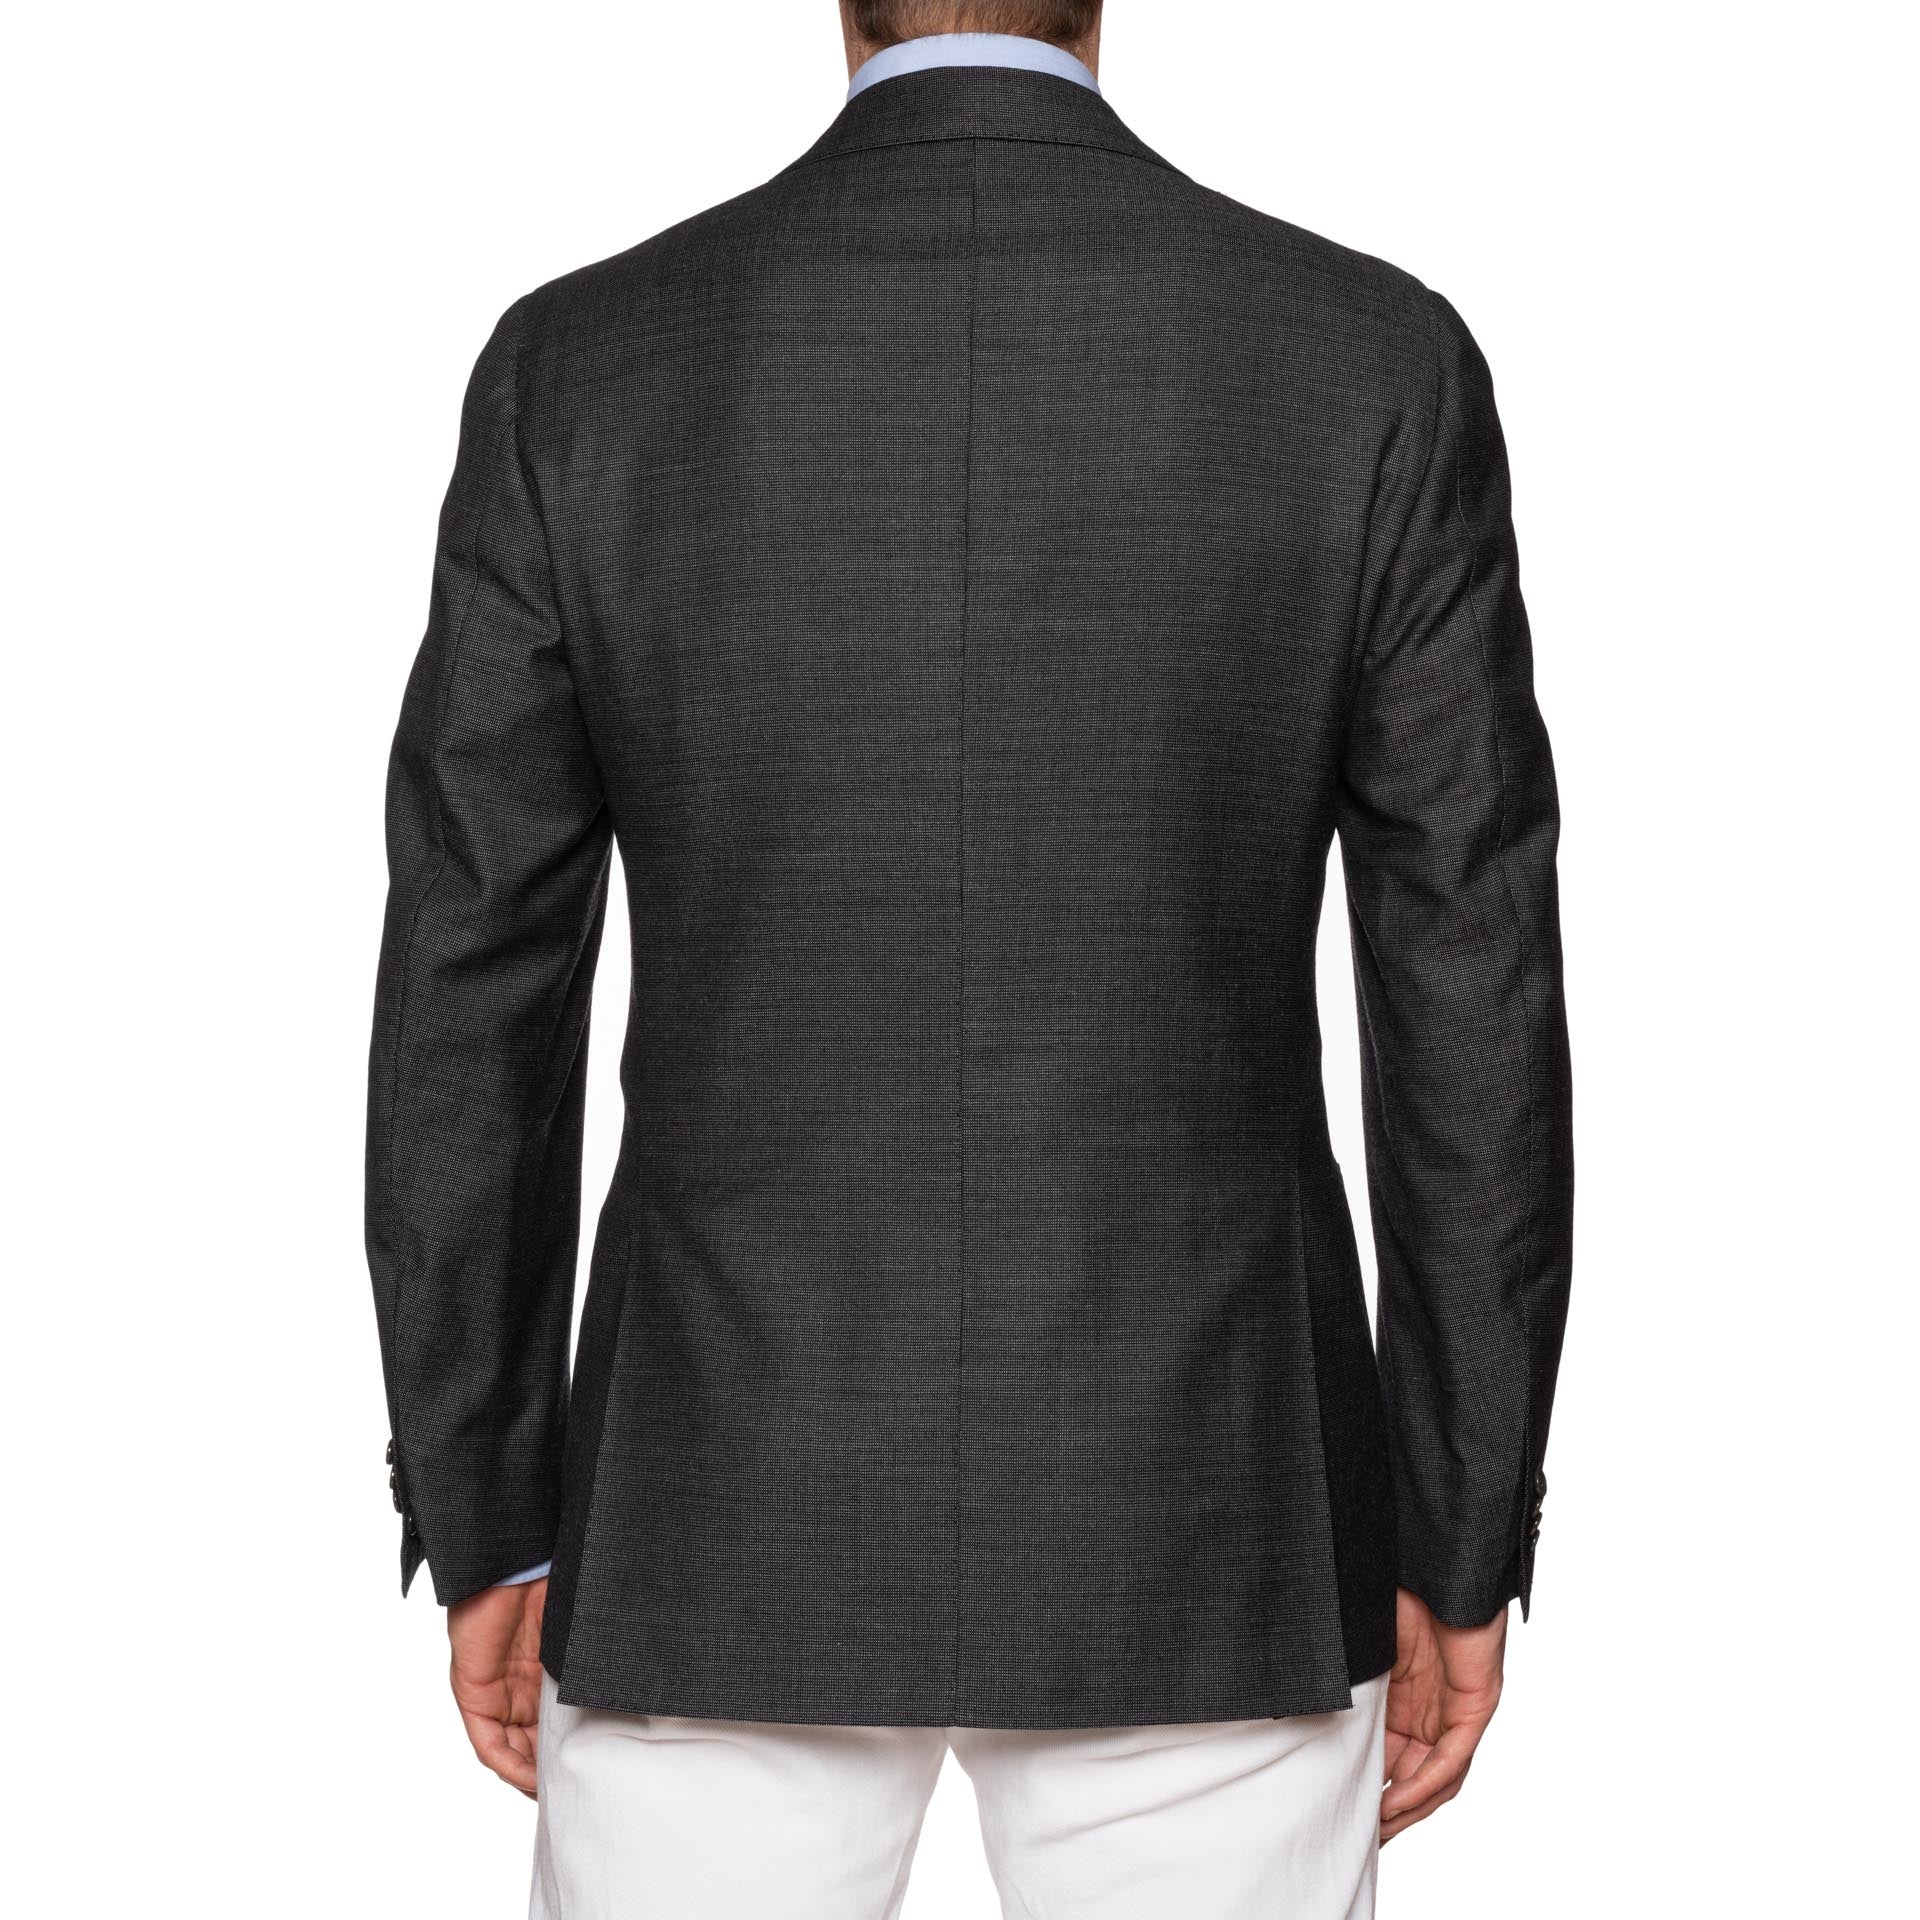 CESARE ATTOLINI for M. BARDELLI Gray Cashmere Wool Super 130's Jacket 50 NEW 40 CESARE ATTOLINI